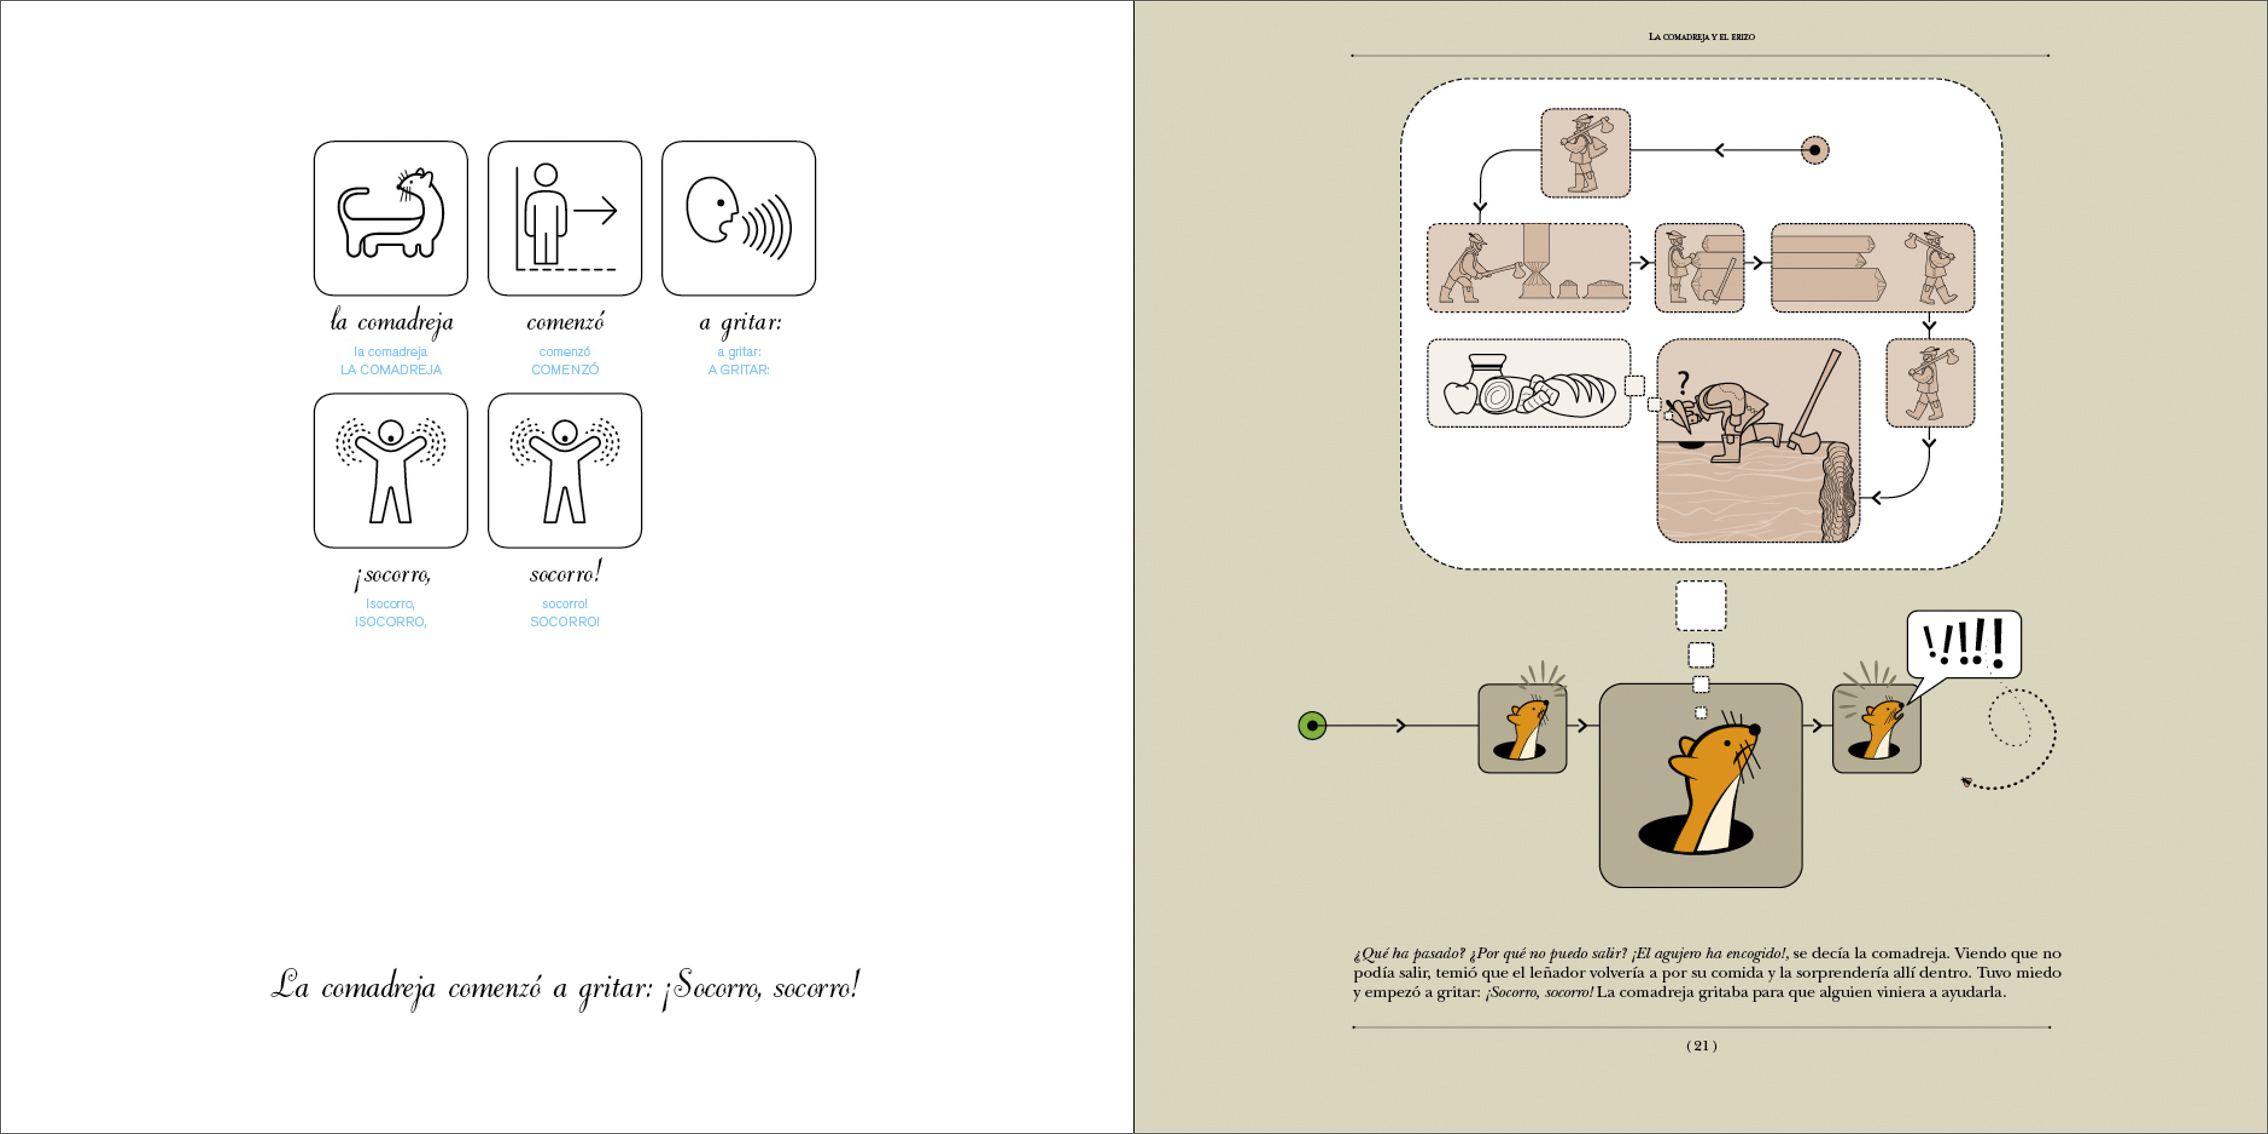 Cuentos ilustrados basados en el sistema pictográfico de comunicación (SPC)